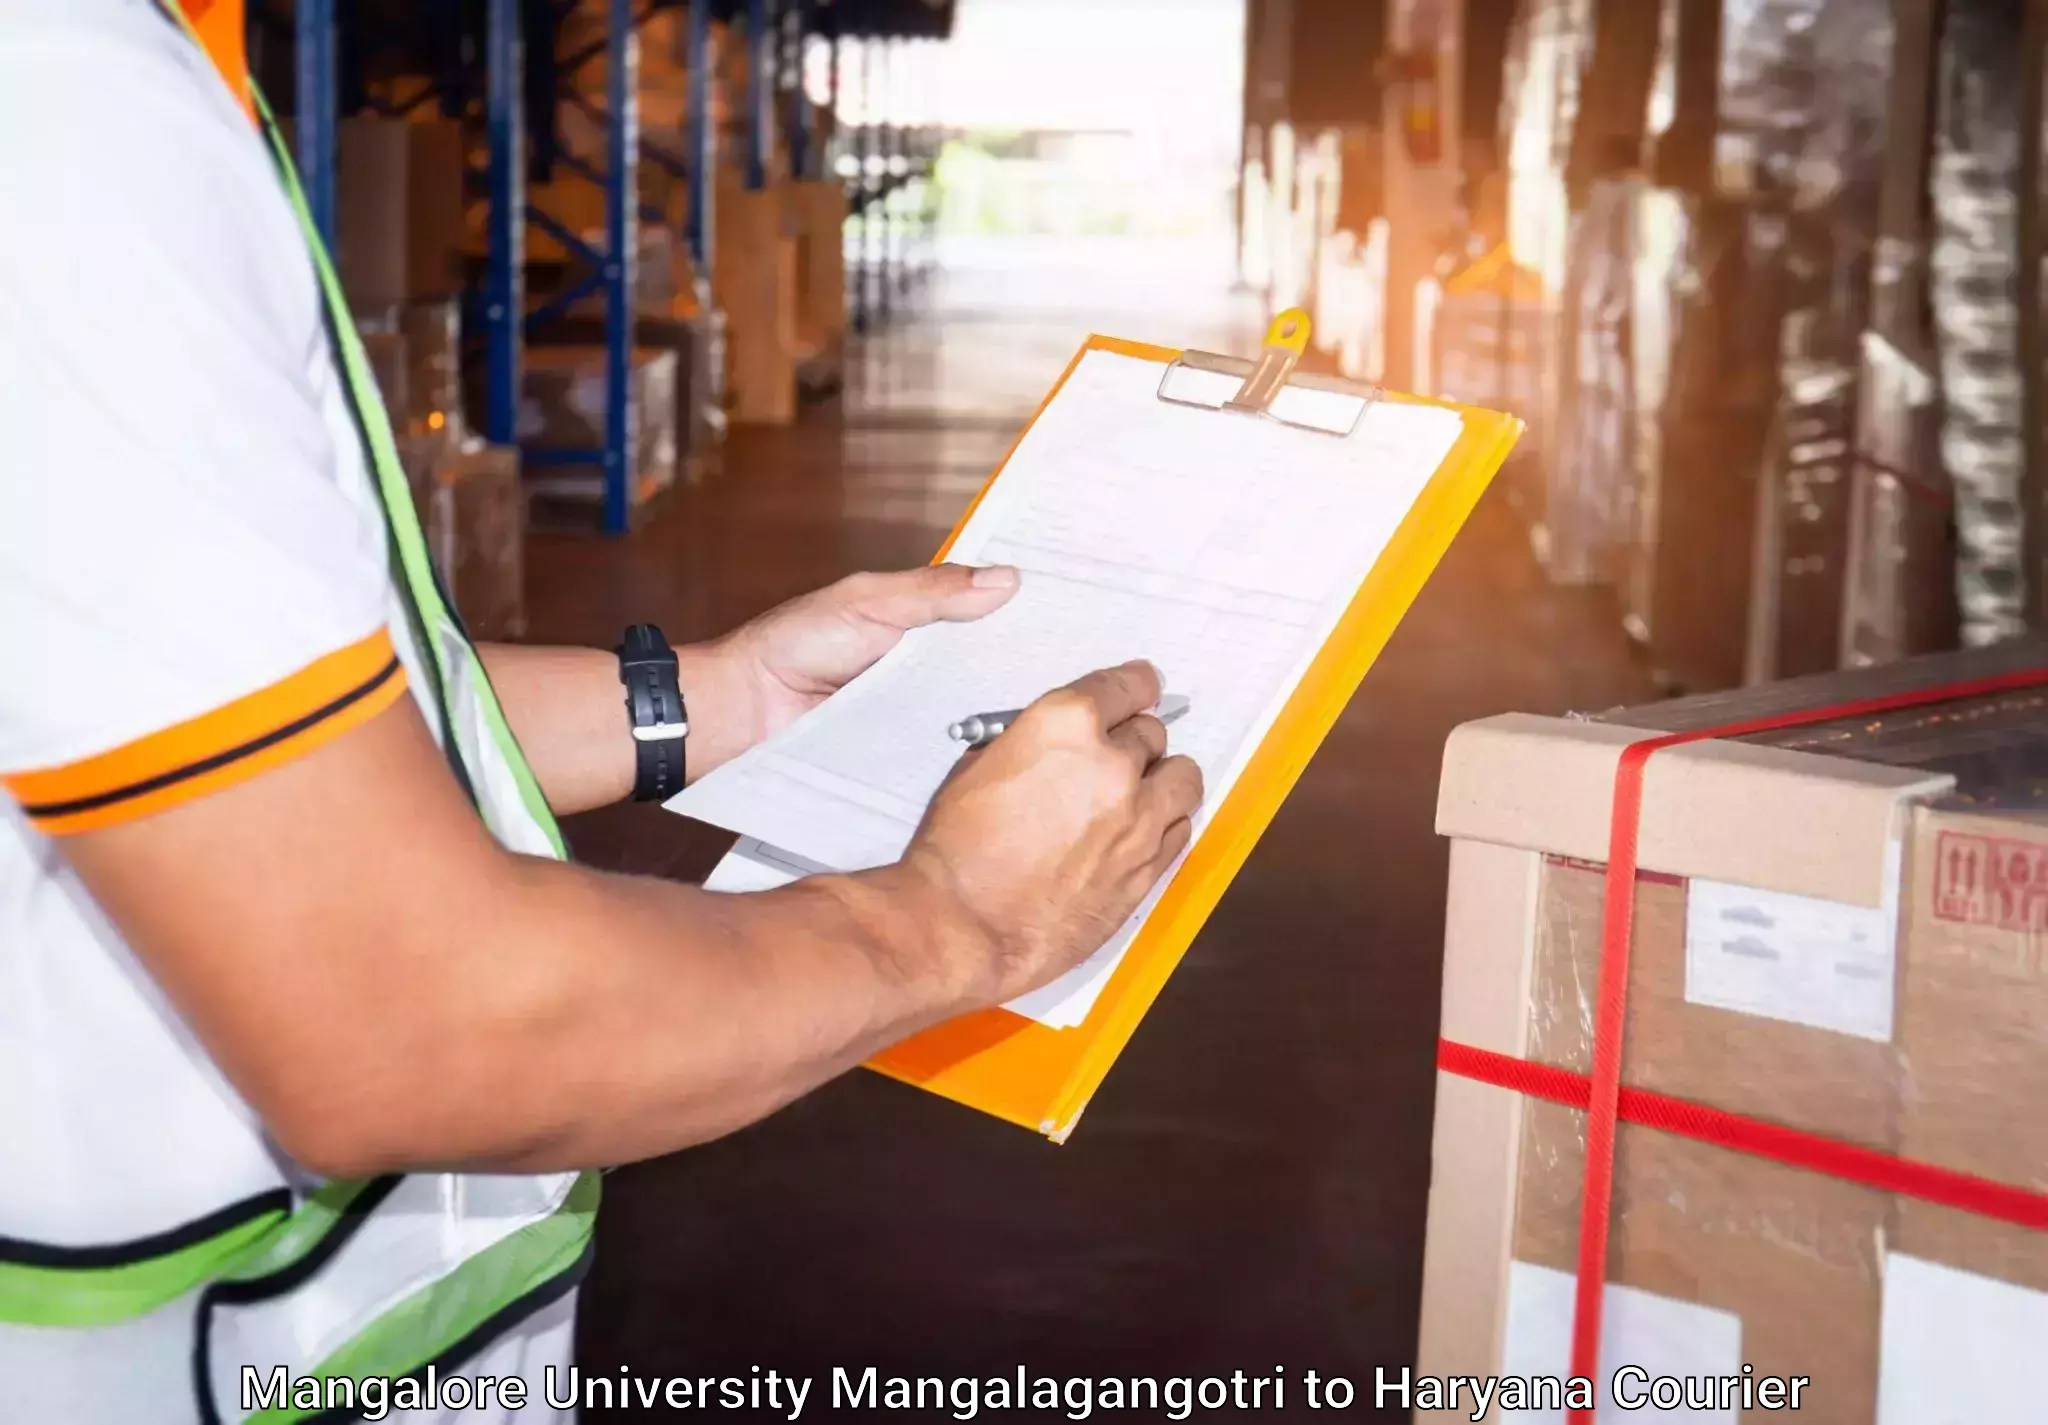 High-quality baggage shipment Mangalore University Mangalagangotri to Haryana